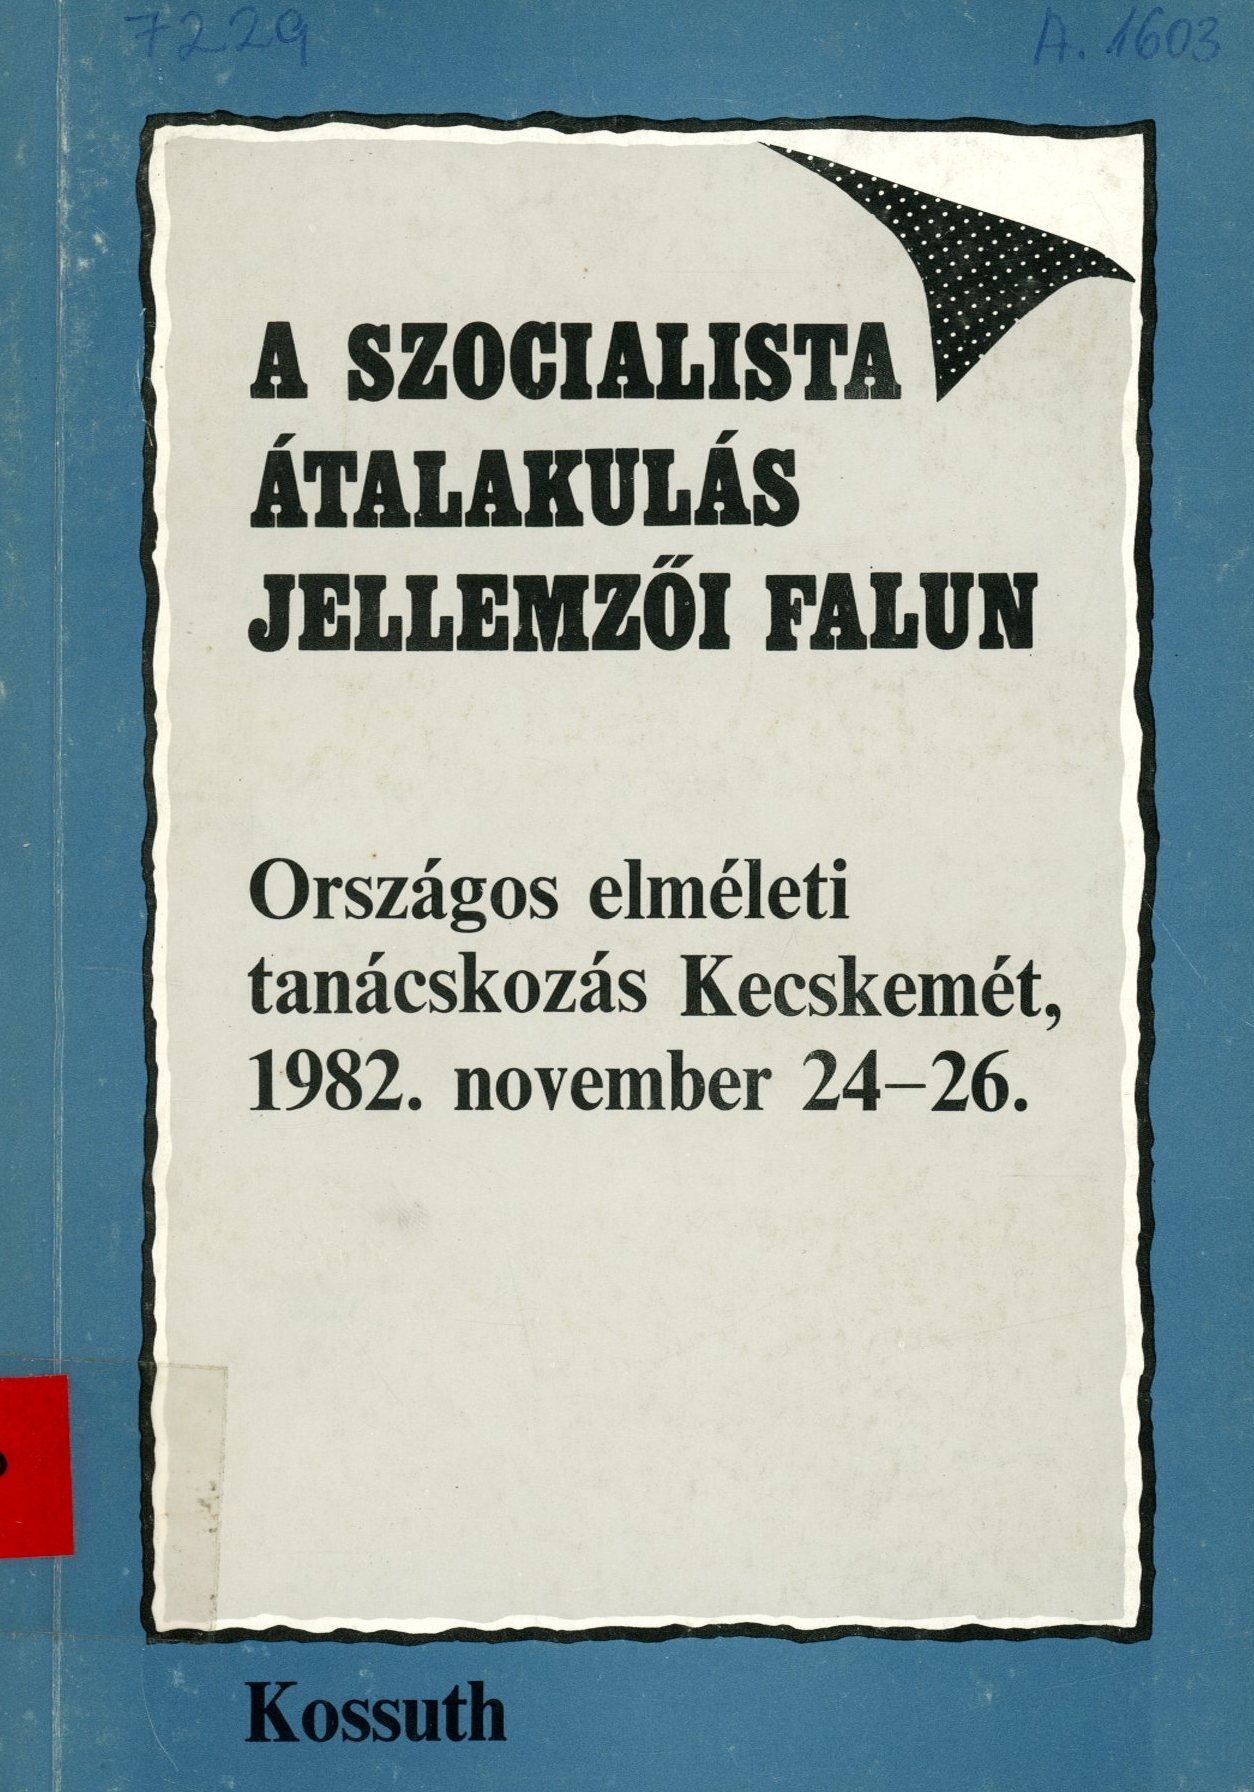 A Szocialista átalakulás jellemzői falun (Erkel Ferenc Múzeum és Könyvtár, Gyula CC BY-NC-SA)